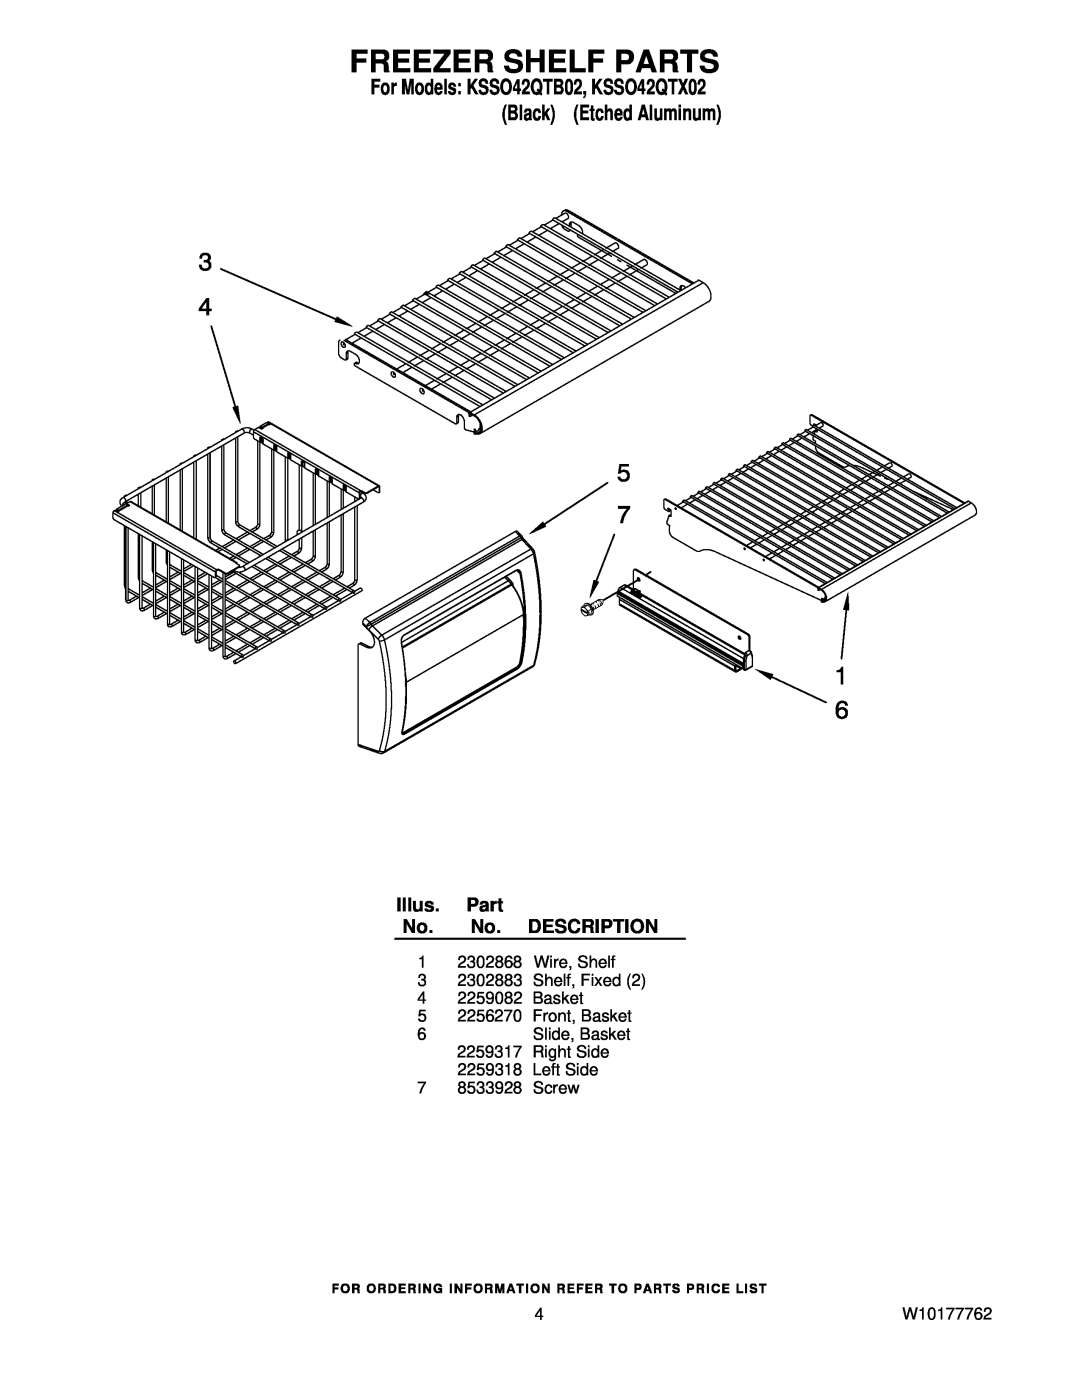 KitchenAid KSSO42QTB02 manual Freezer Shelf Parts, Illus. Part No. No. DESCRIPTION, Left Side 7 8533928 Screw, W10177762 